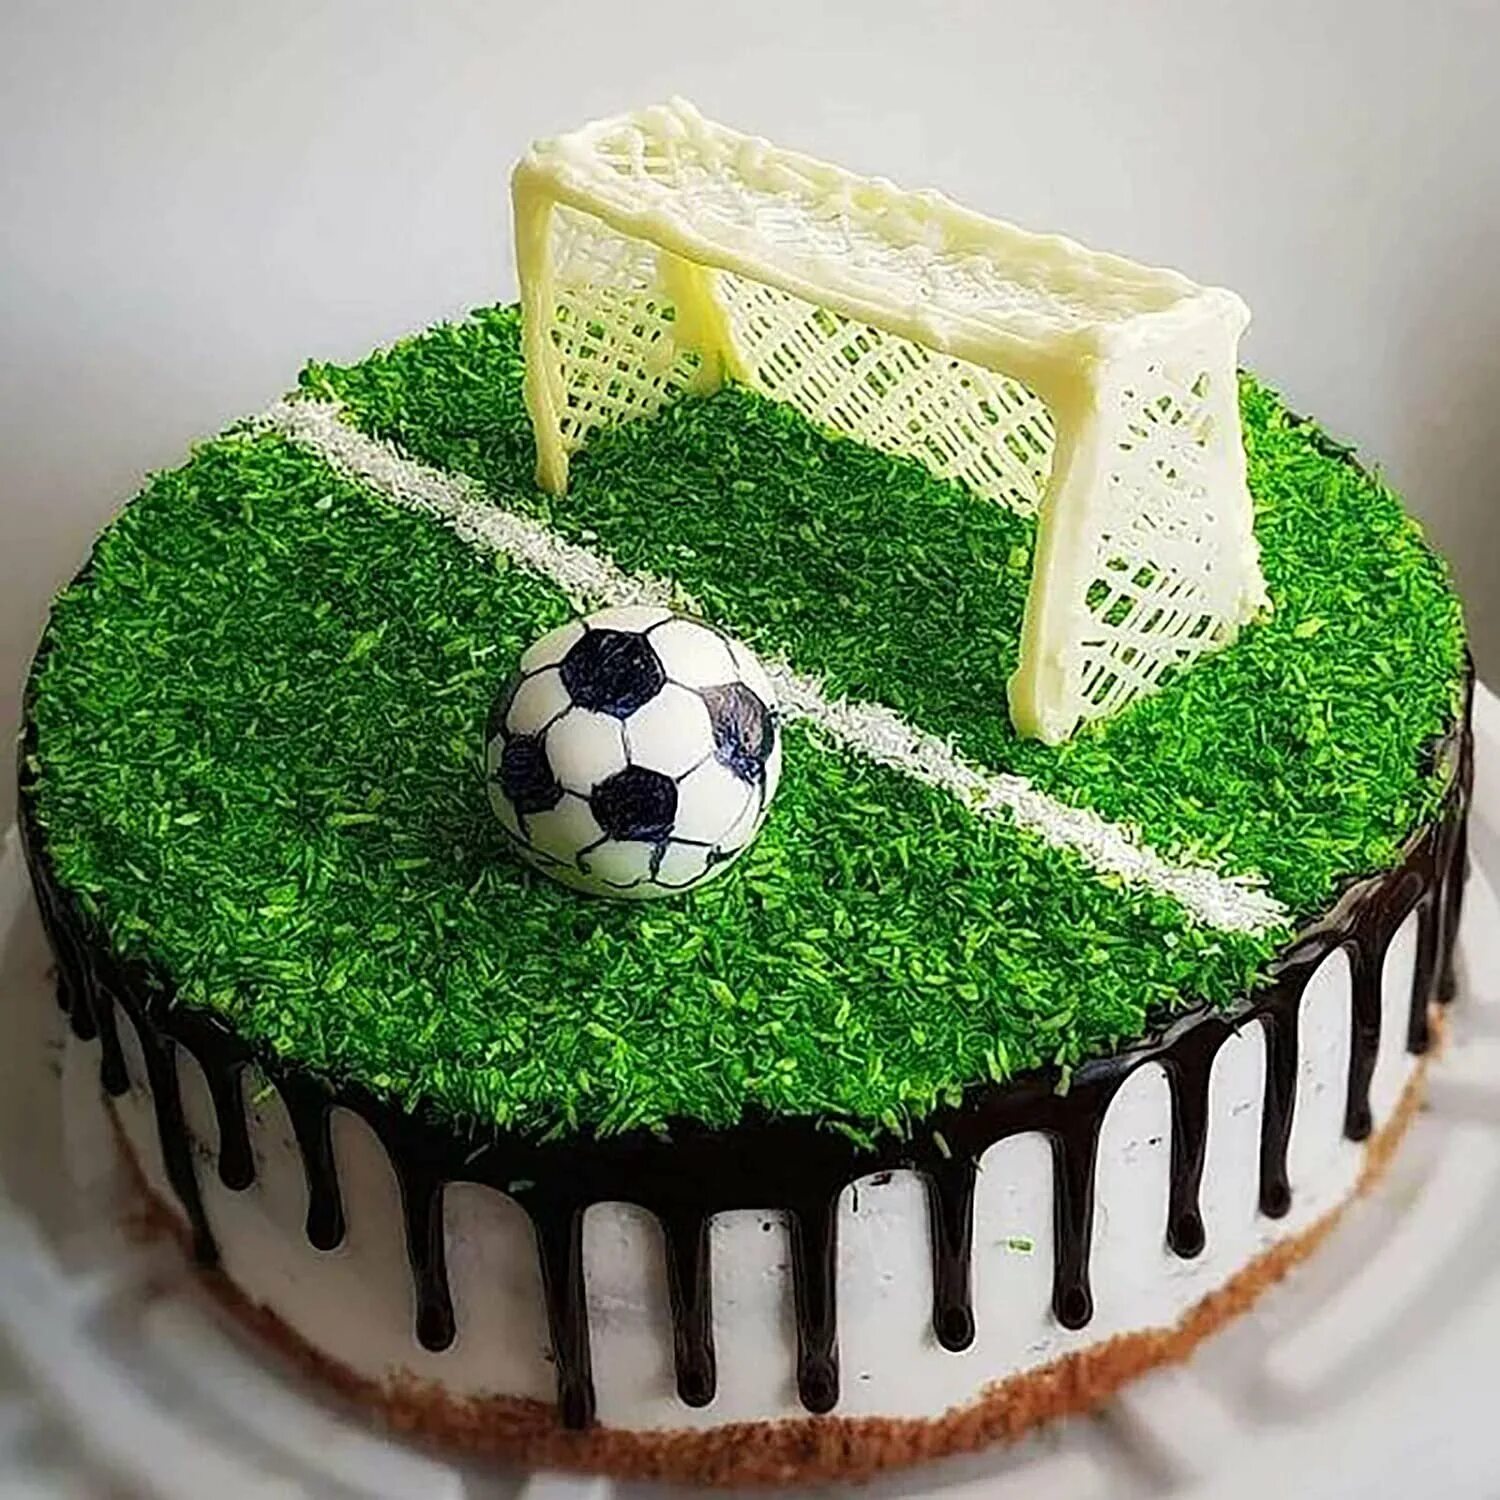 Торт футбольное поле. Торт с футбольной тематикой. Торт «футболисту». Торт футбольный для мальчика.